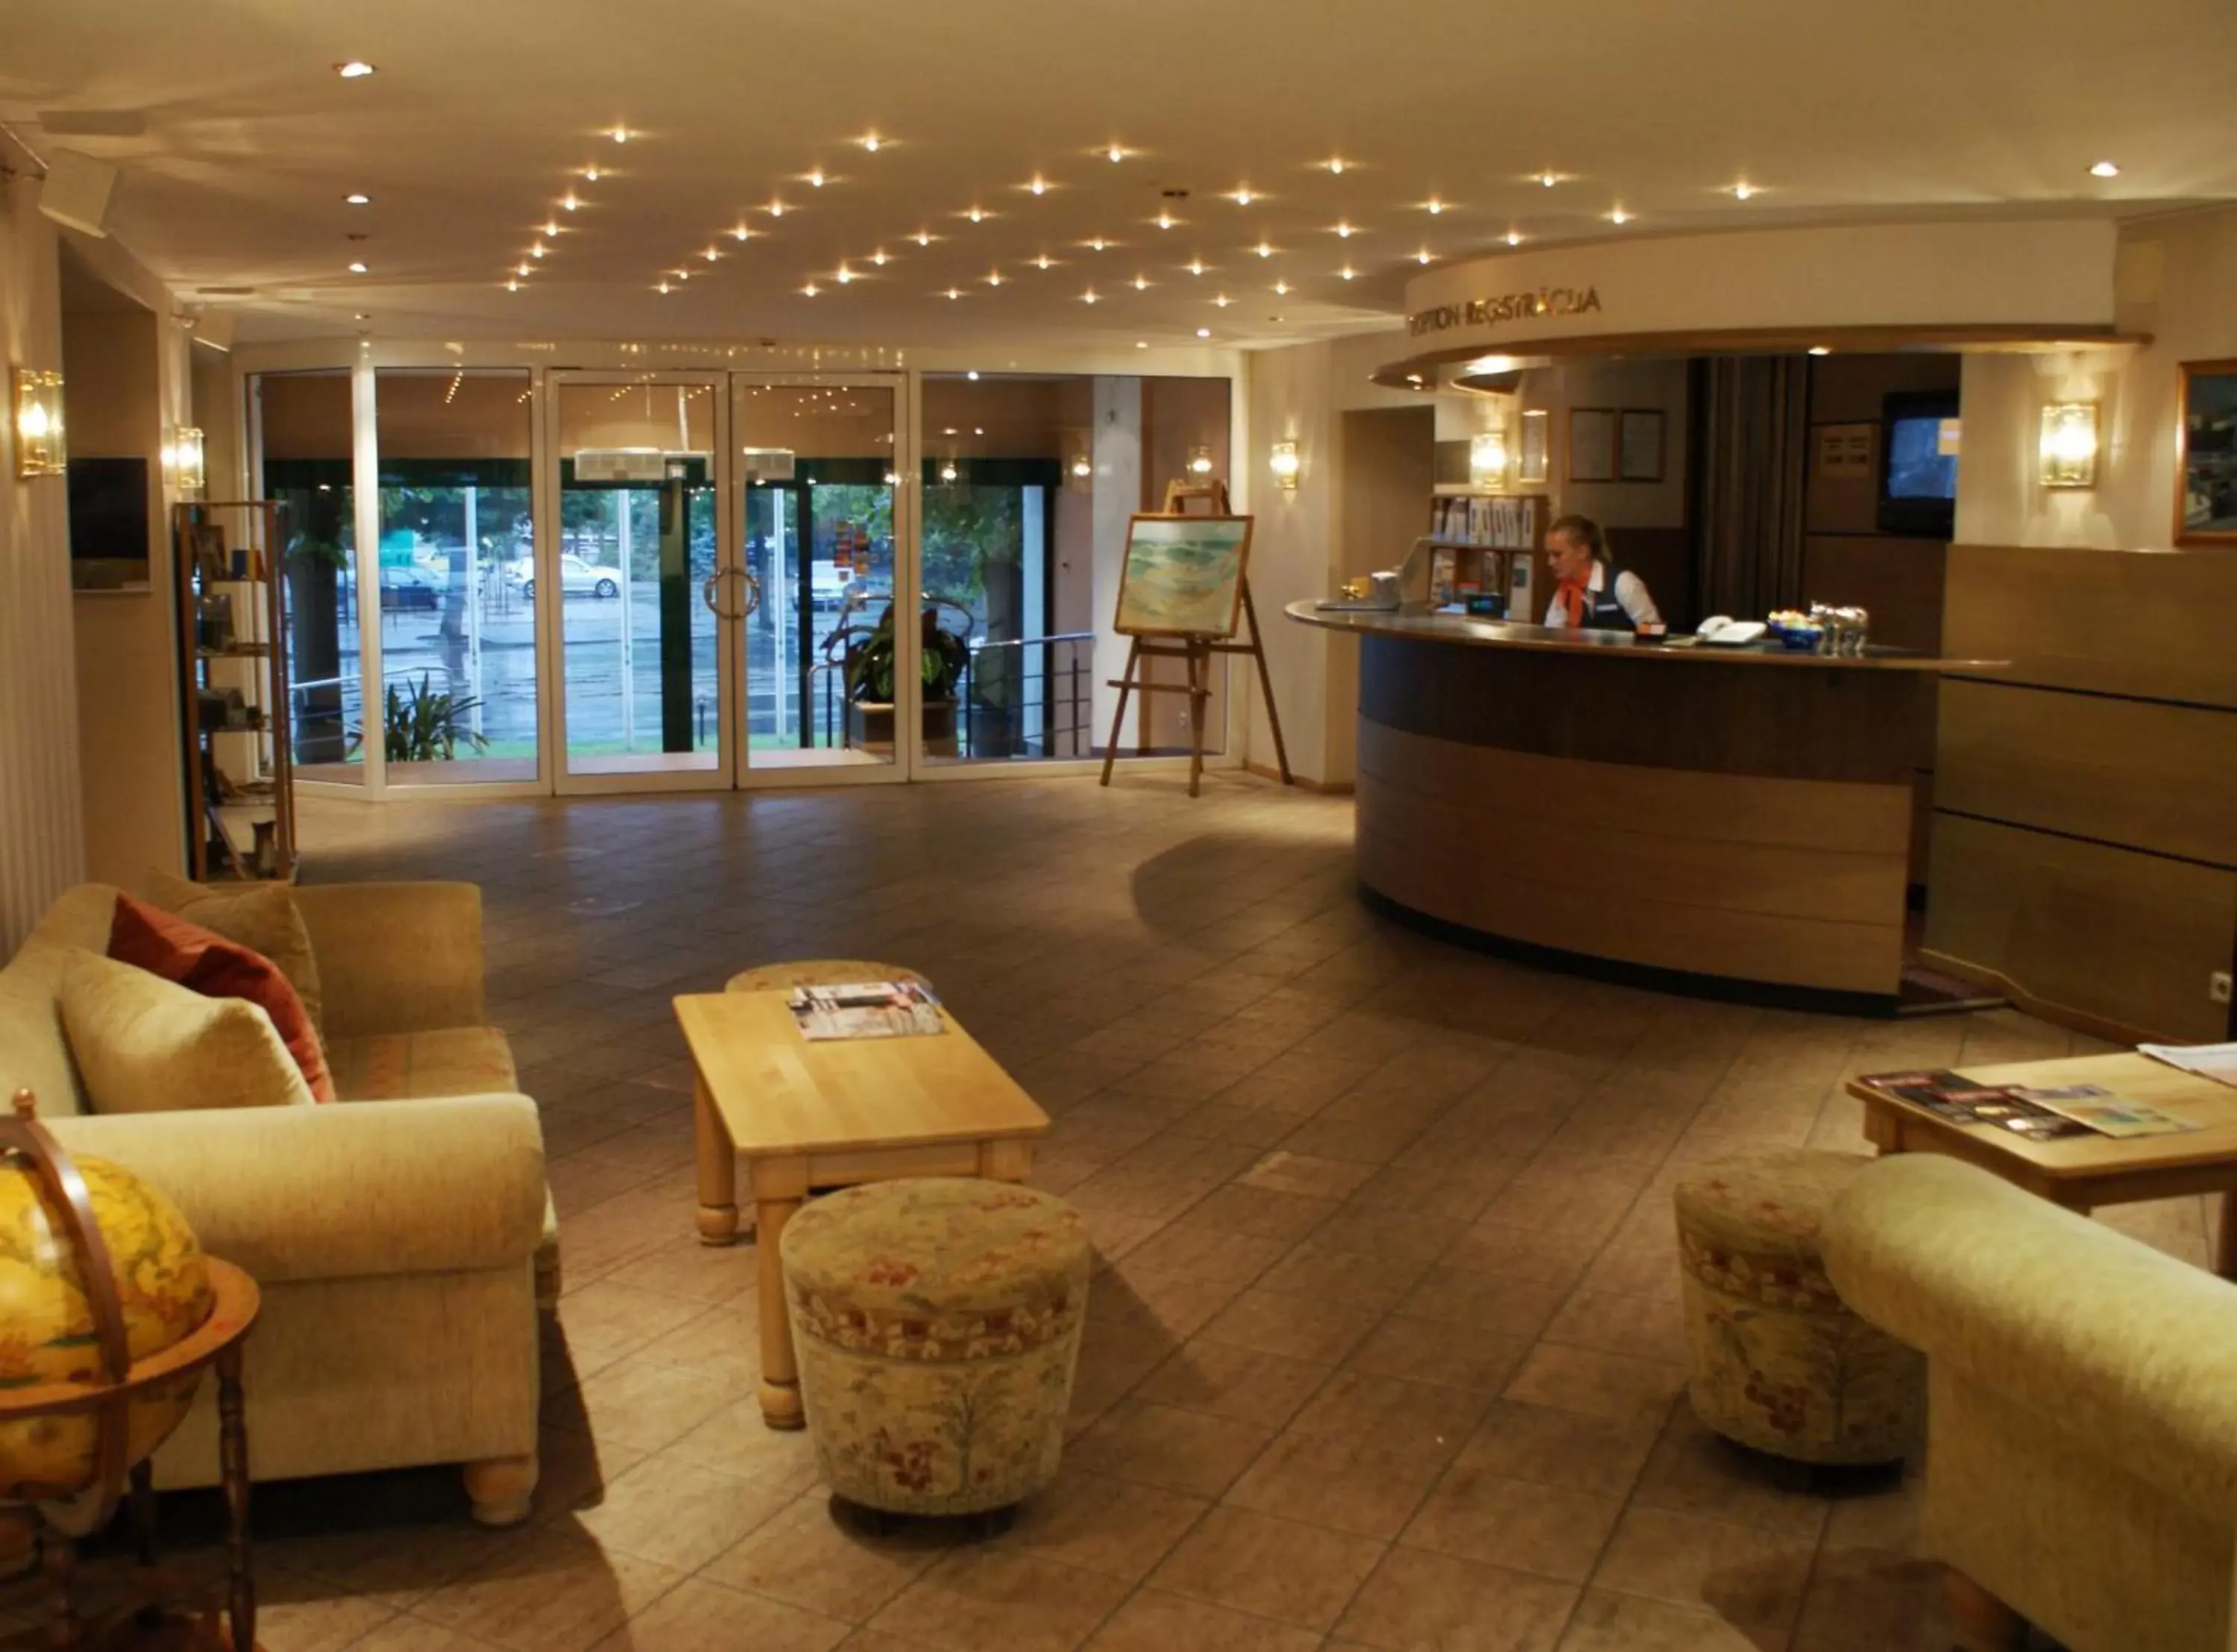 Lobby or reception, Lobby/Reception in Amrita Hotel